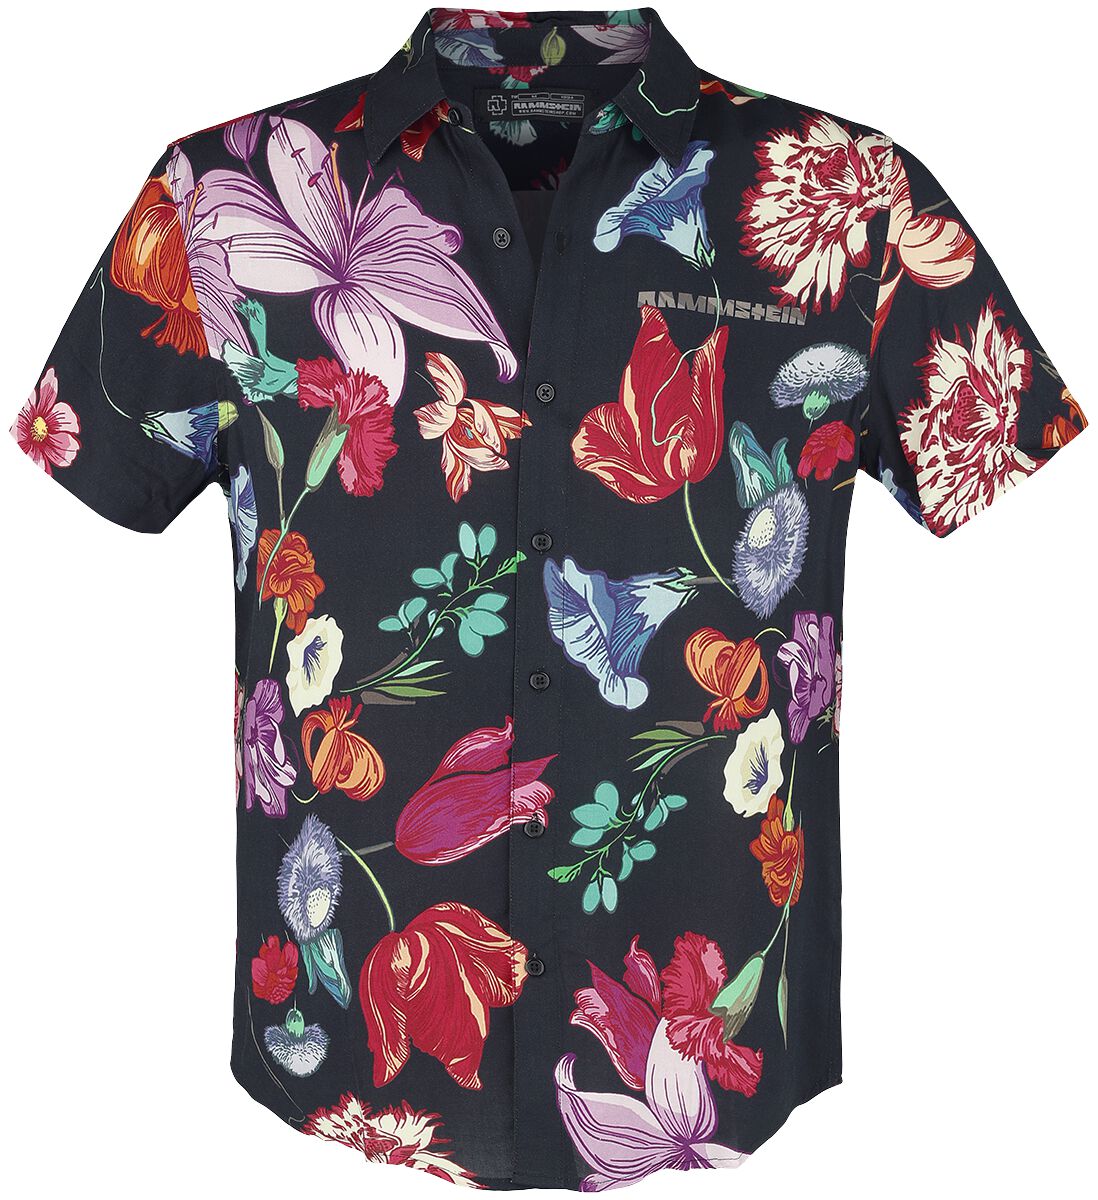 Rammstein Kurzarmhemd - Blumen - S bis 5XL - für Männer - Größe S - multicolor  - Lizenziertes Merchandise!